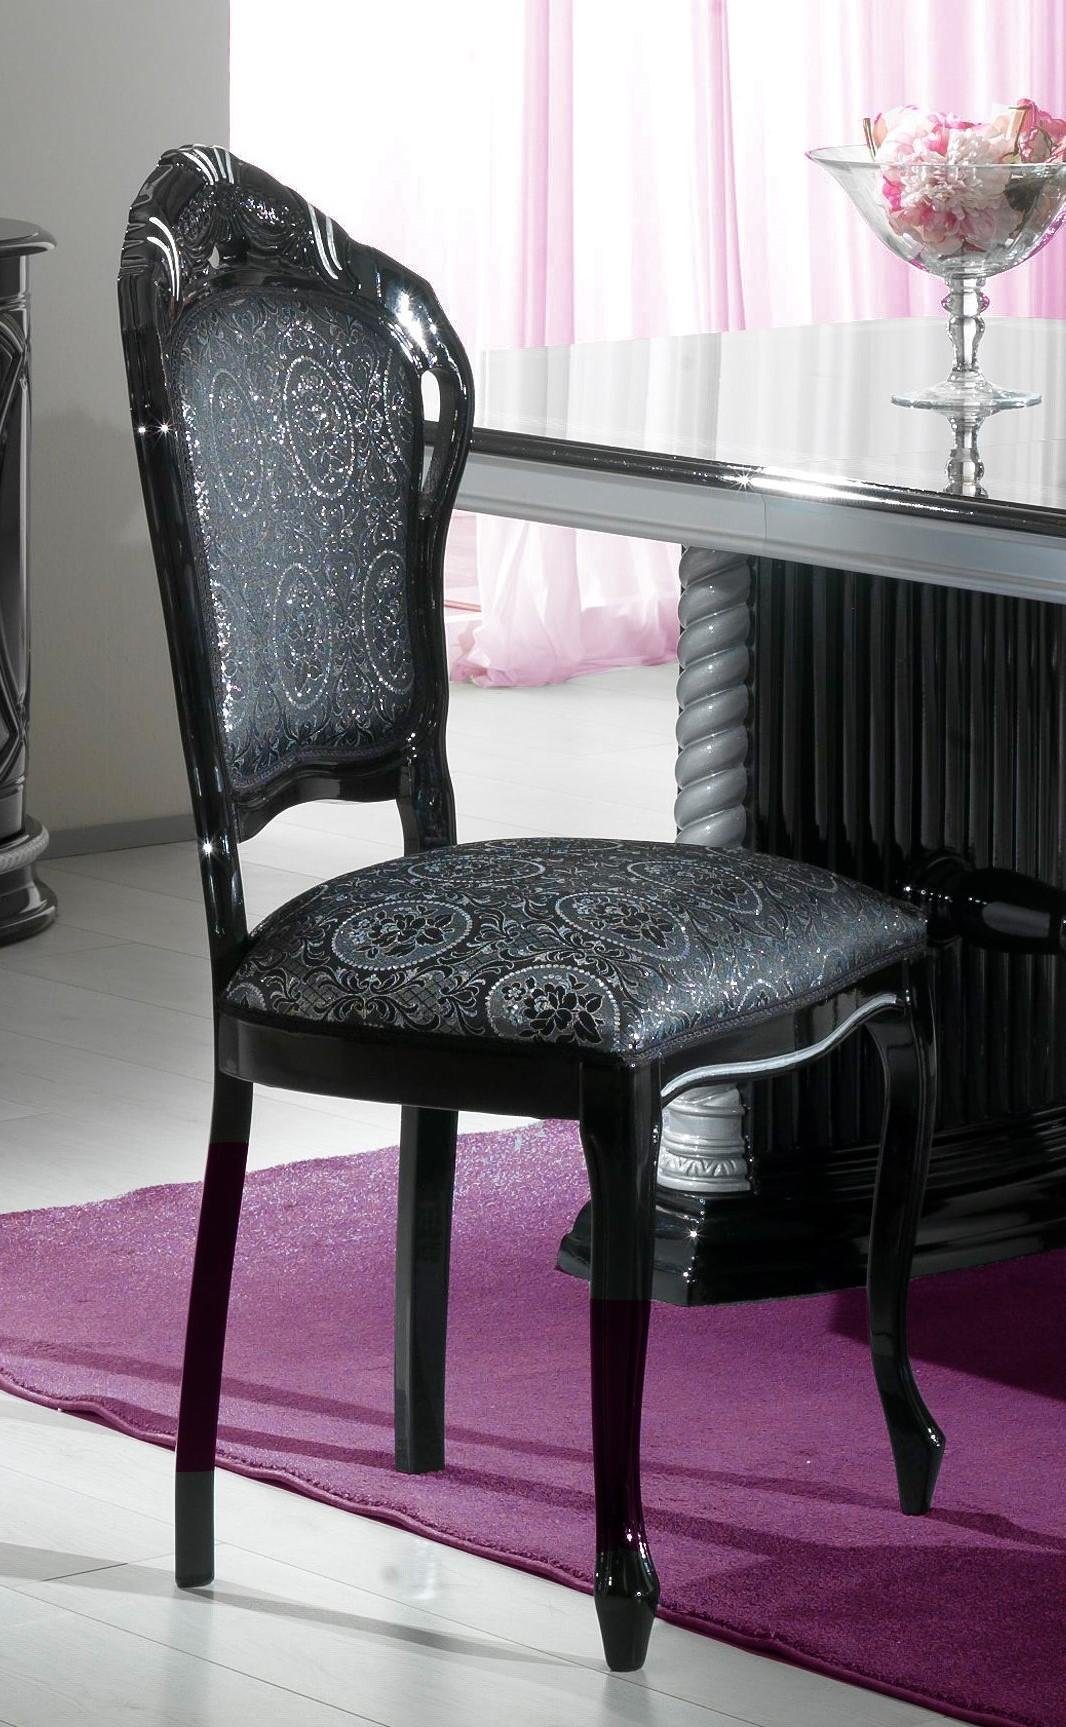 JVmoebel Stuhl, Stuhl Schwarz Holz Esszimmer Polster Design Silber Wohnzimmer Stühle Italy Made